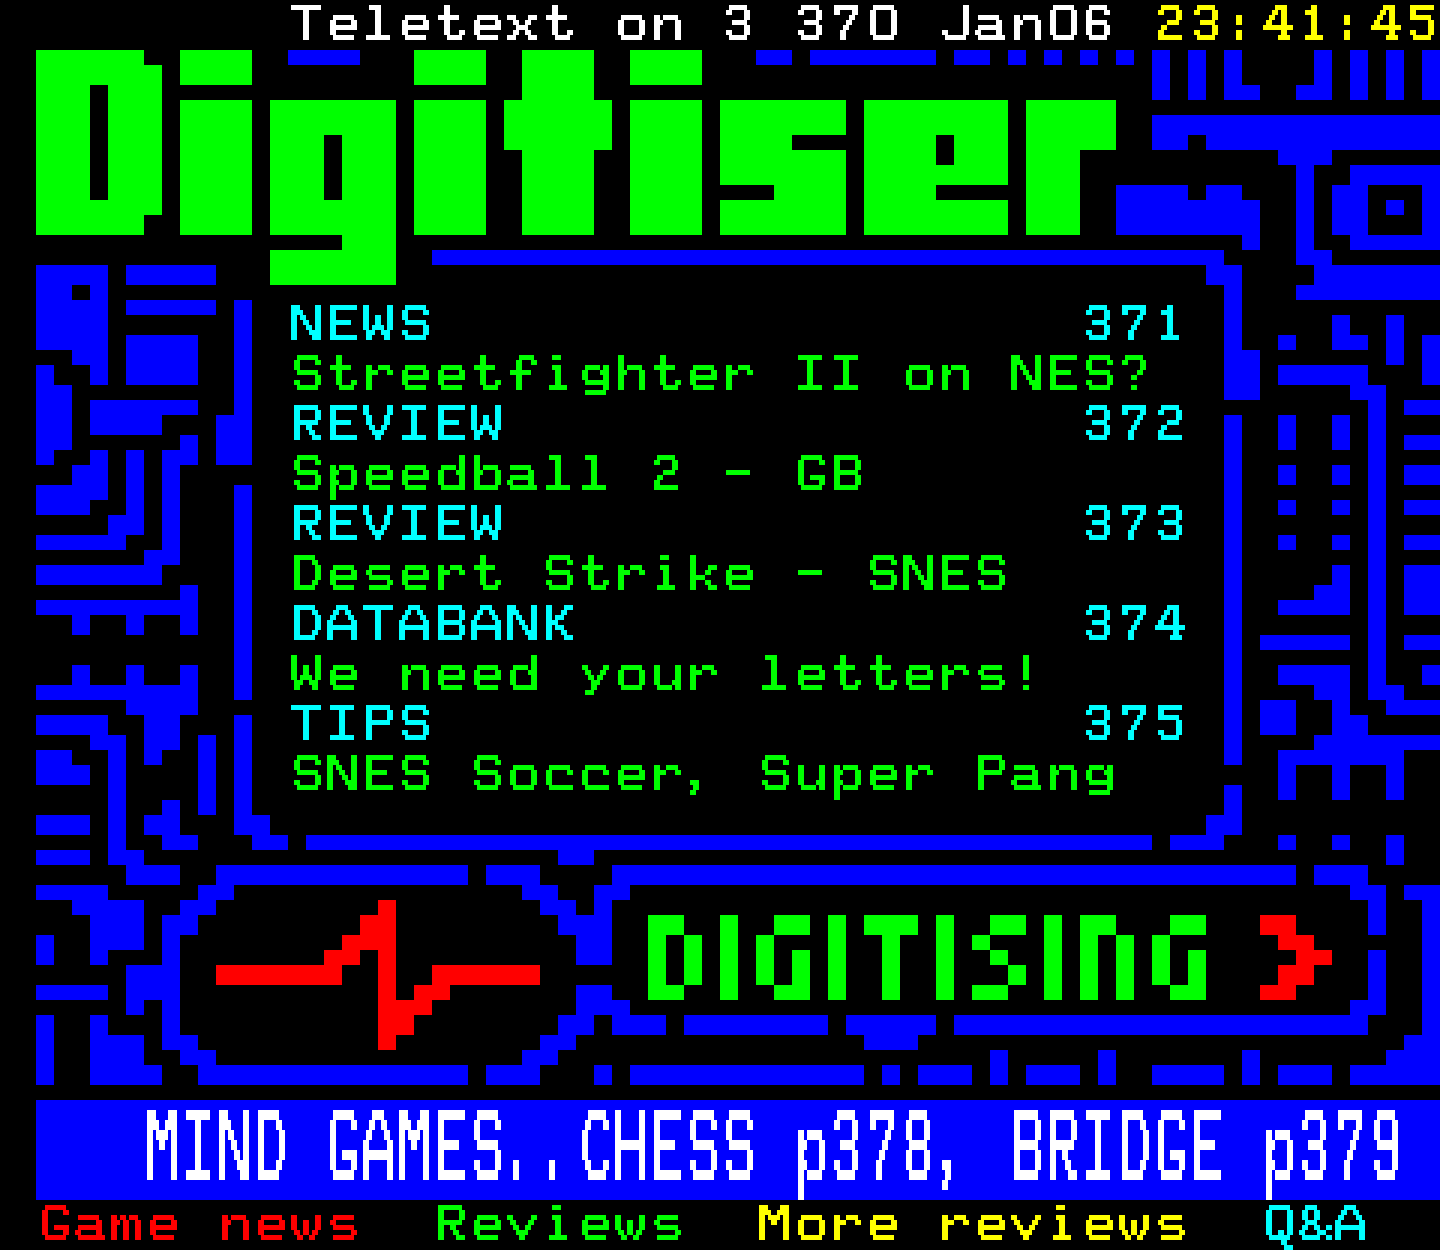 Digitiser, Teletext - 1993